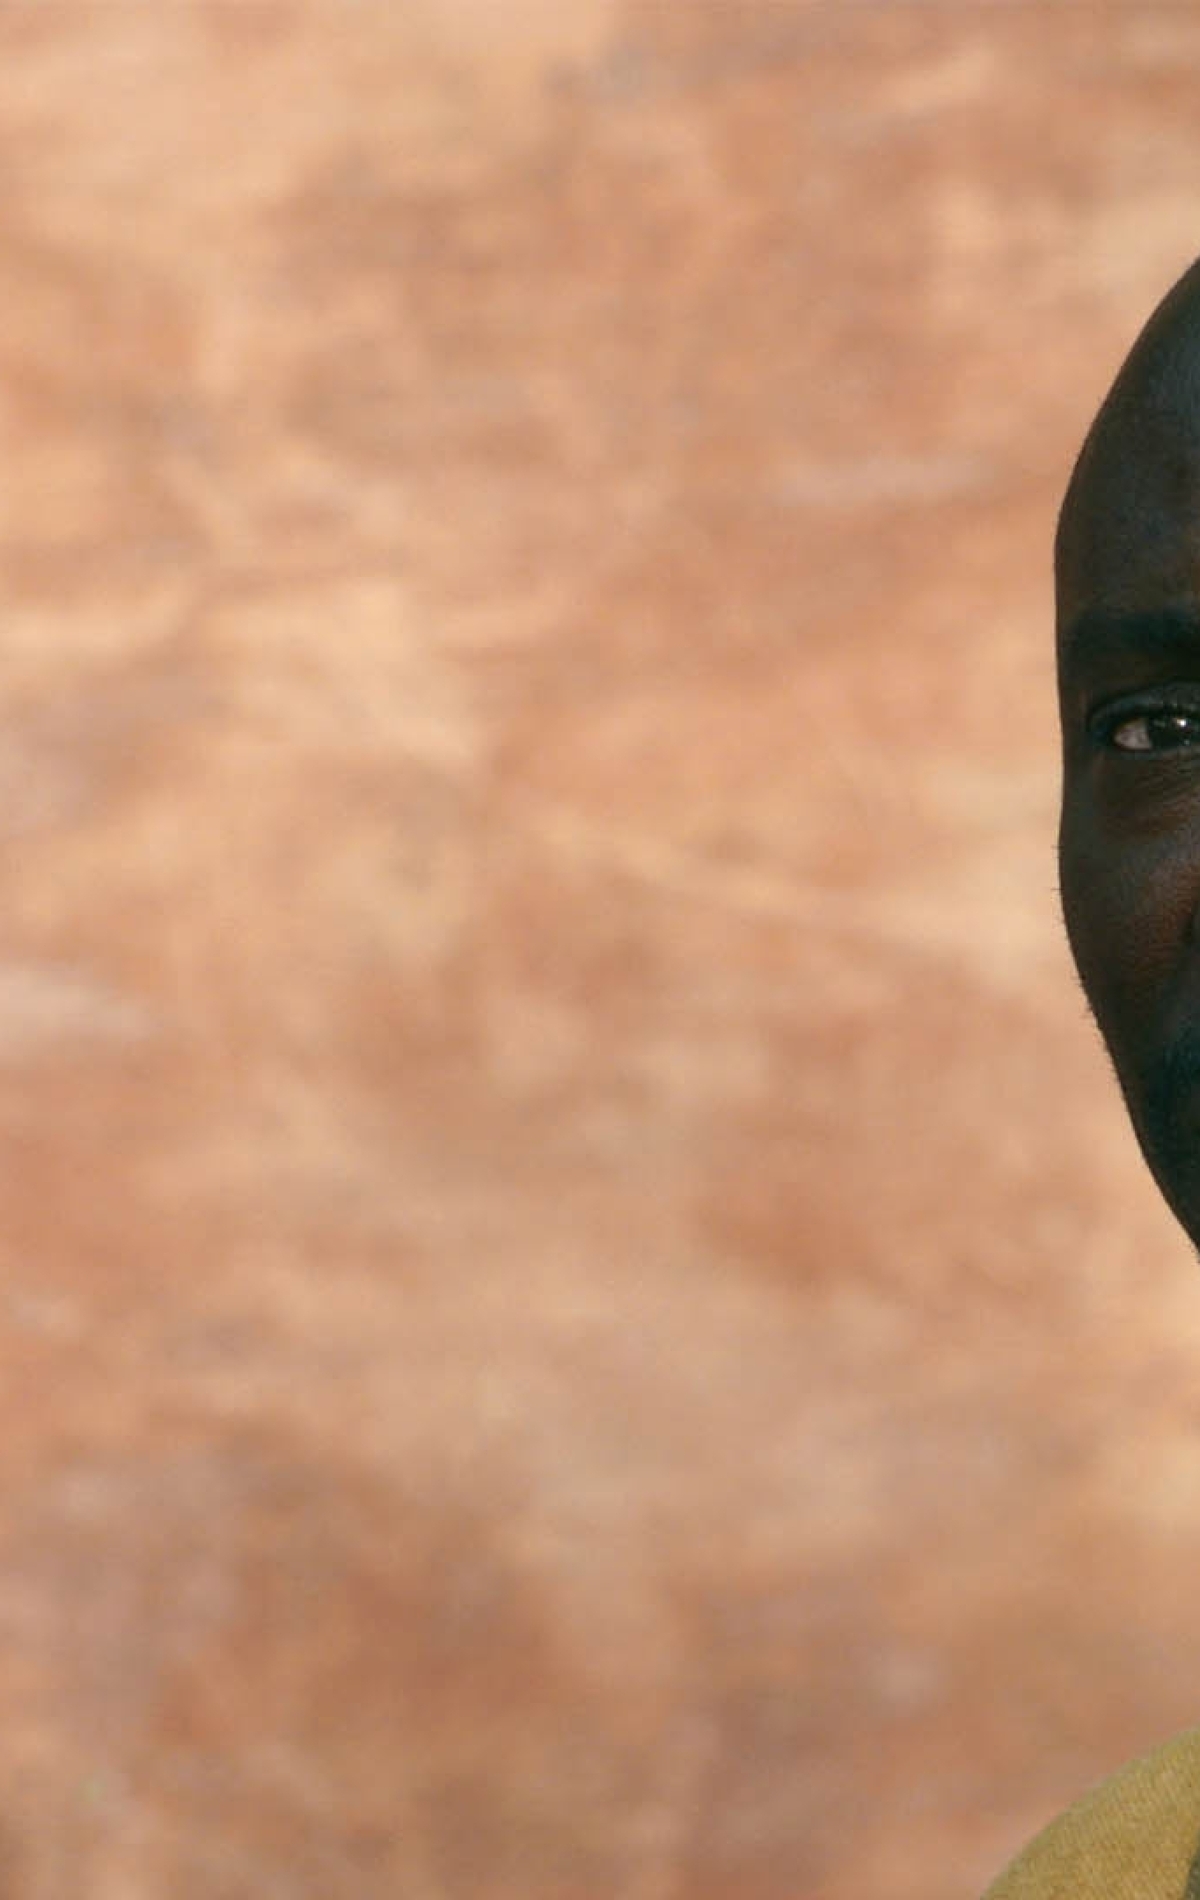 Картинка: Мужчина, африканец, Issa Bagayogo, взгляд, усы, инструмент